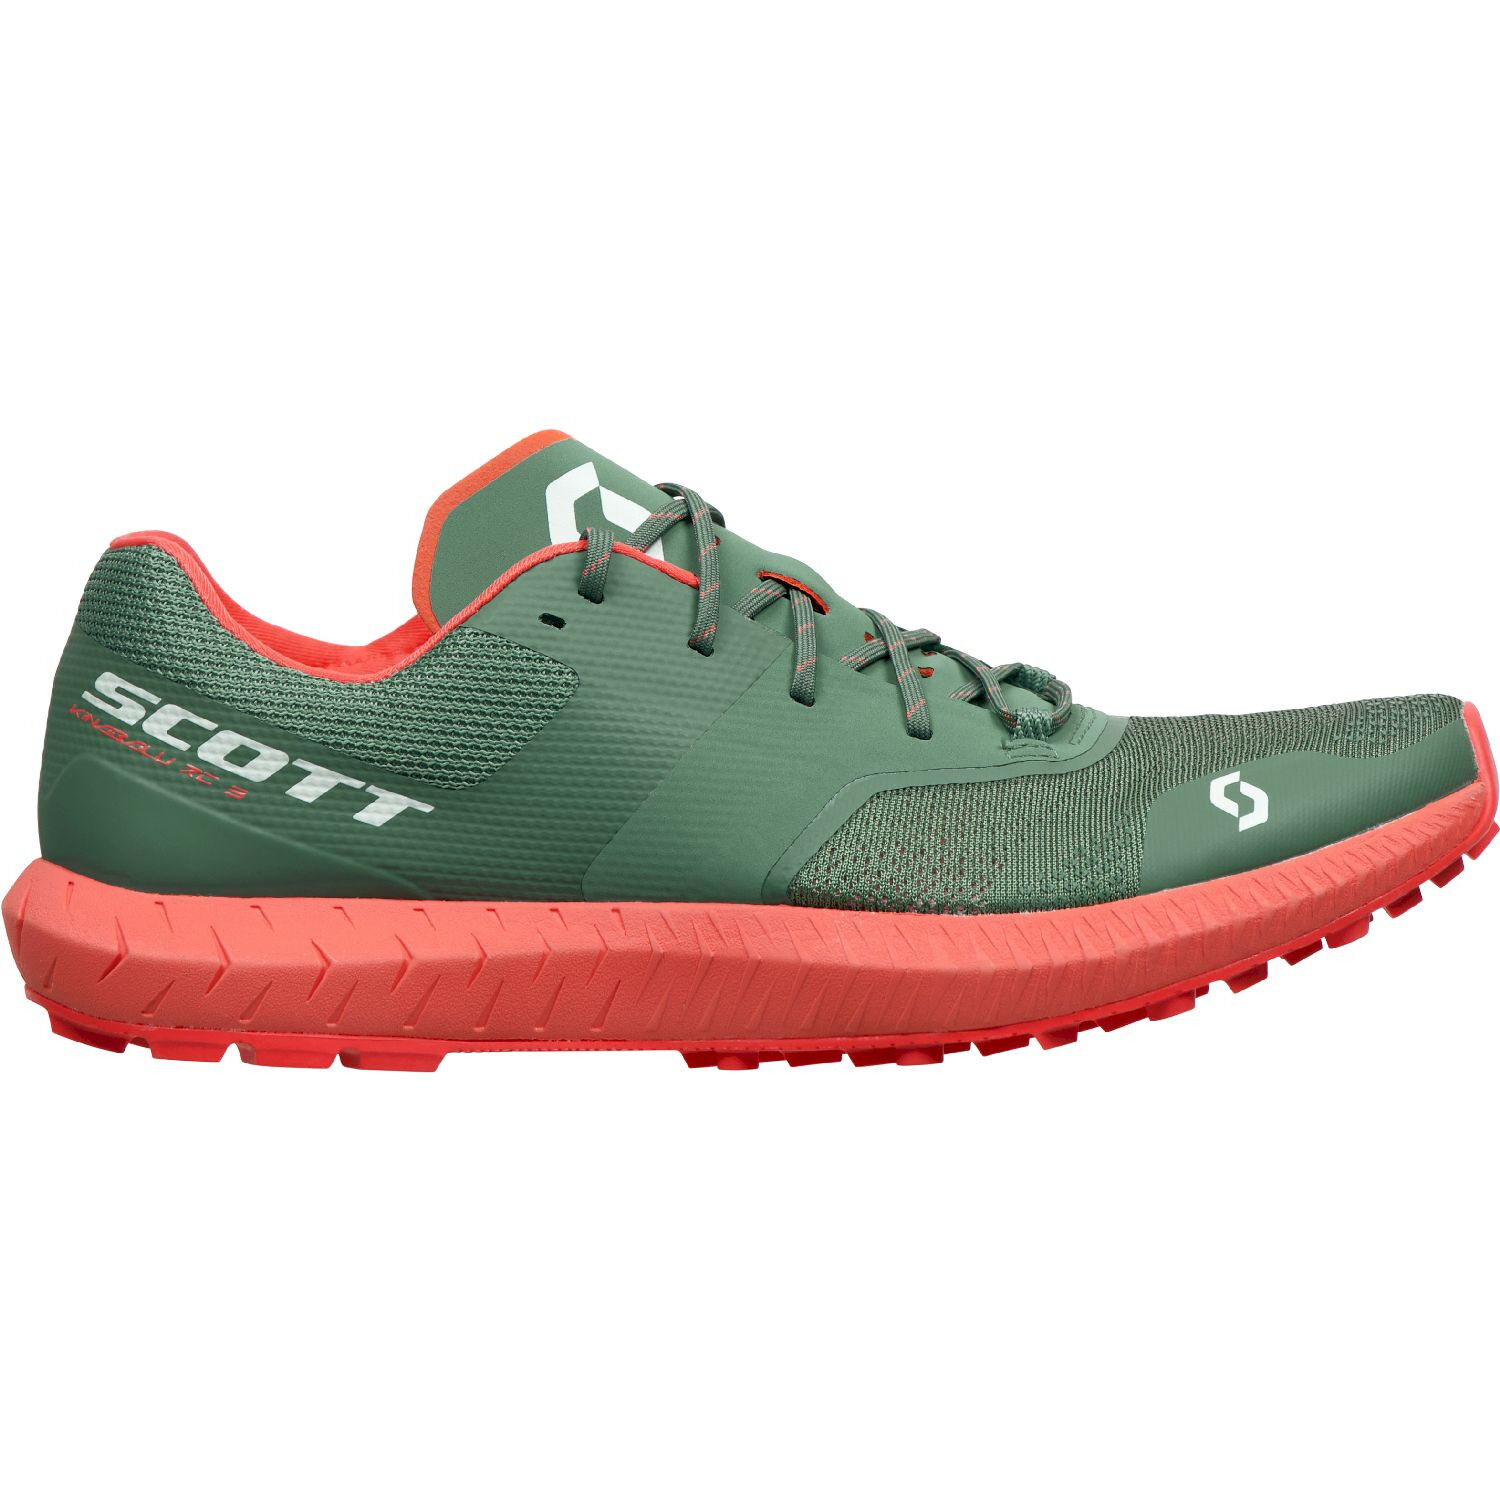 Scott Kinabalu RC 3 - Trail running shoes - Women's